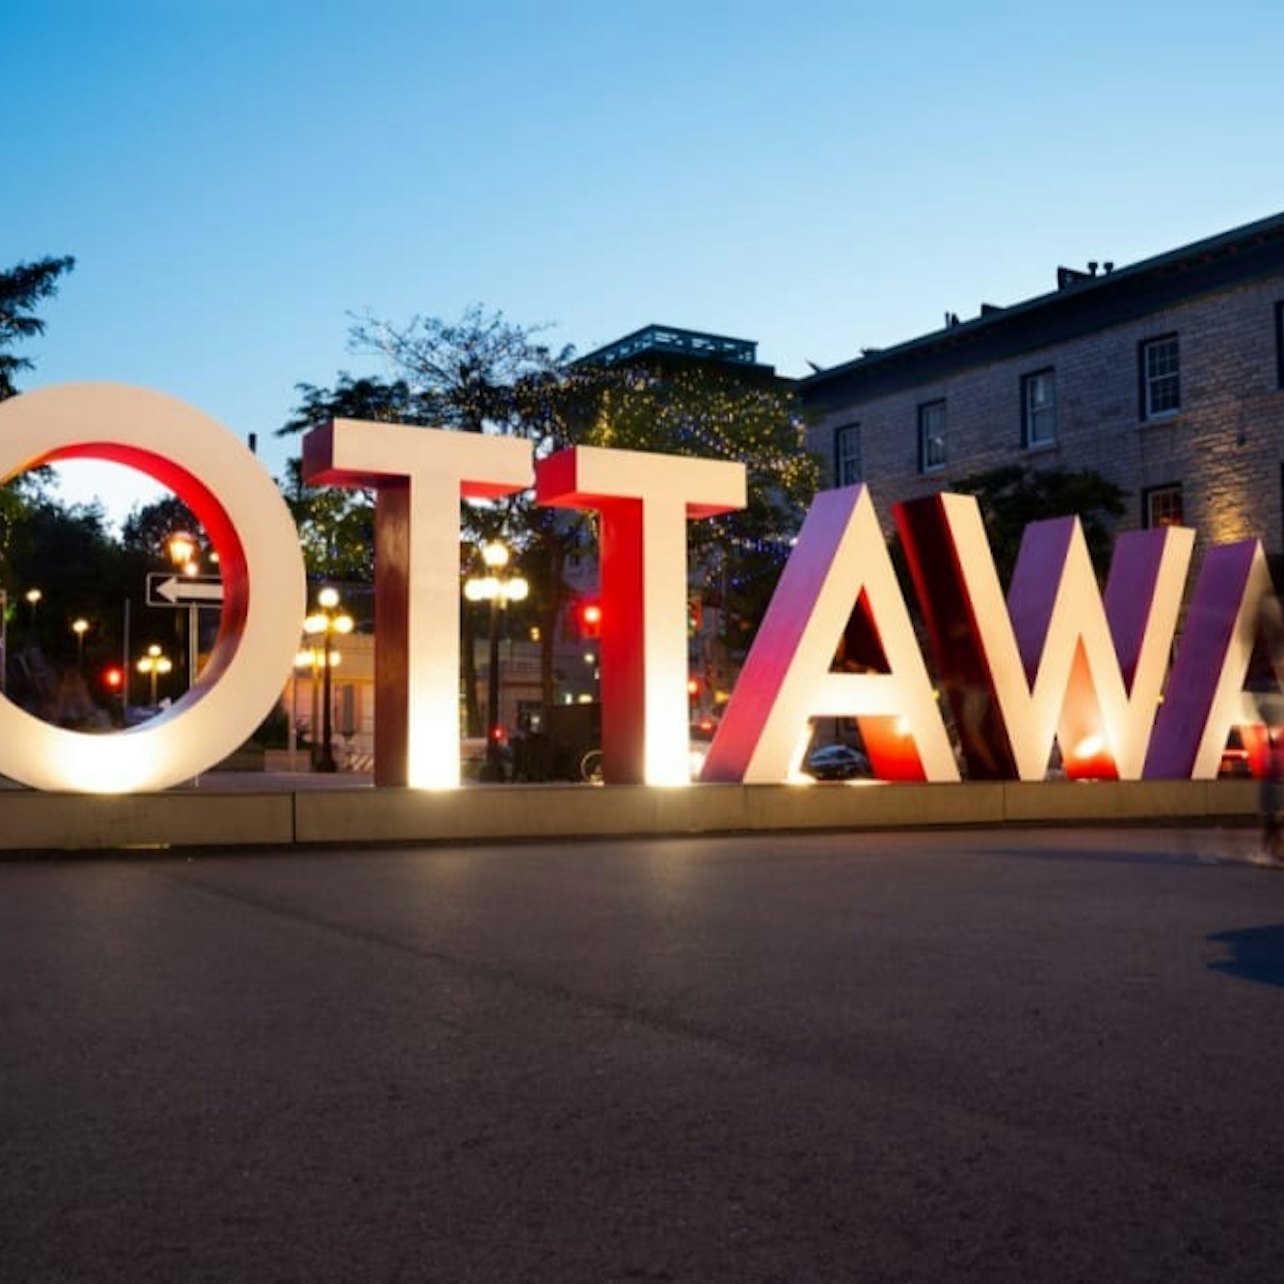 Ottawa Night Tour + Espectáculo de Luz de Colina do Parlamento - Acomodações em Ottawa